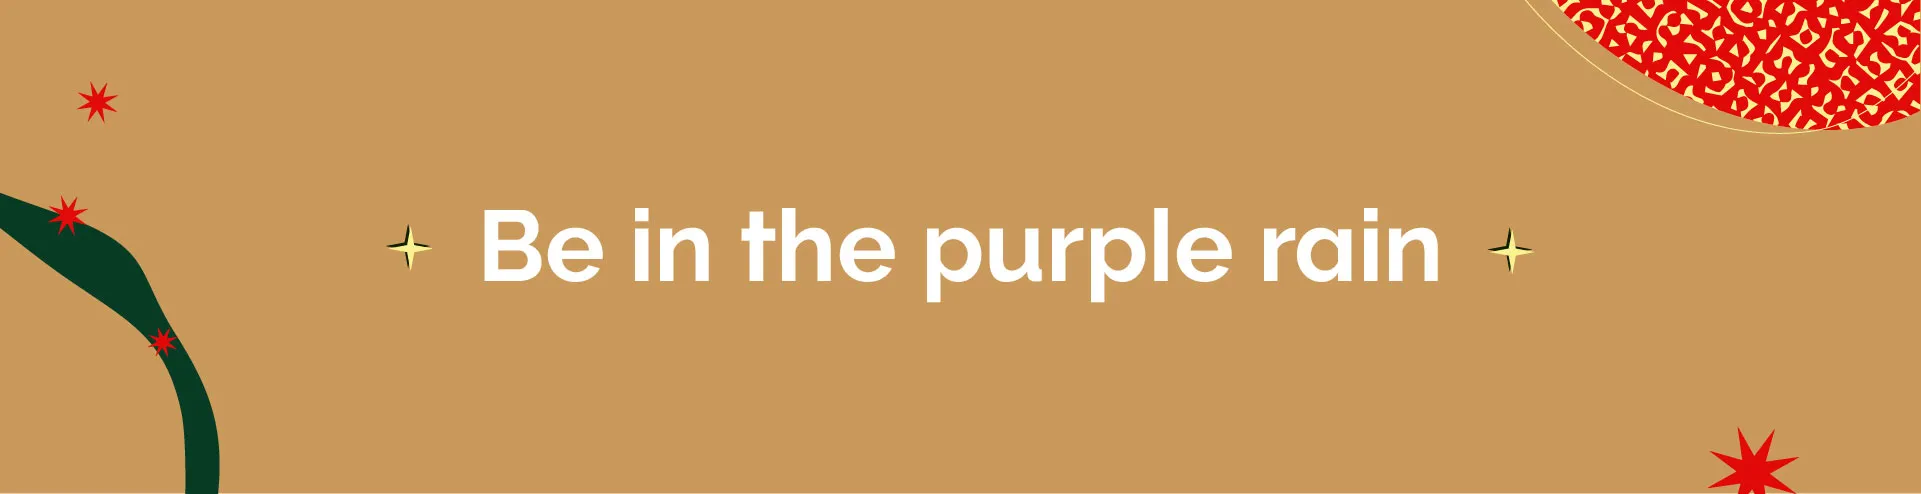 Full-width-banner-resizes-v2_full-width-gift-idea-purple-desktop.webp